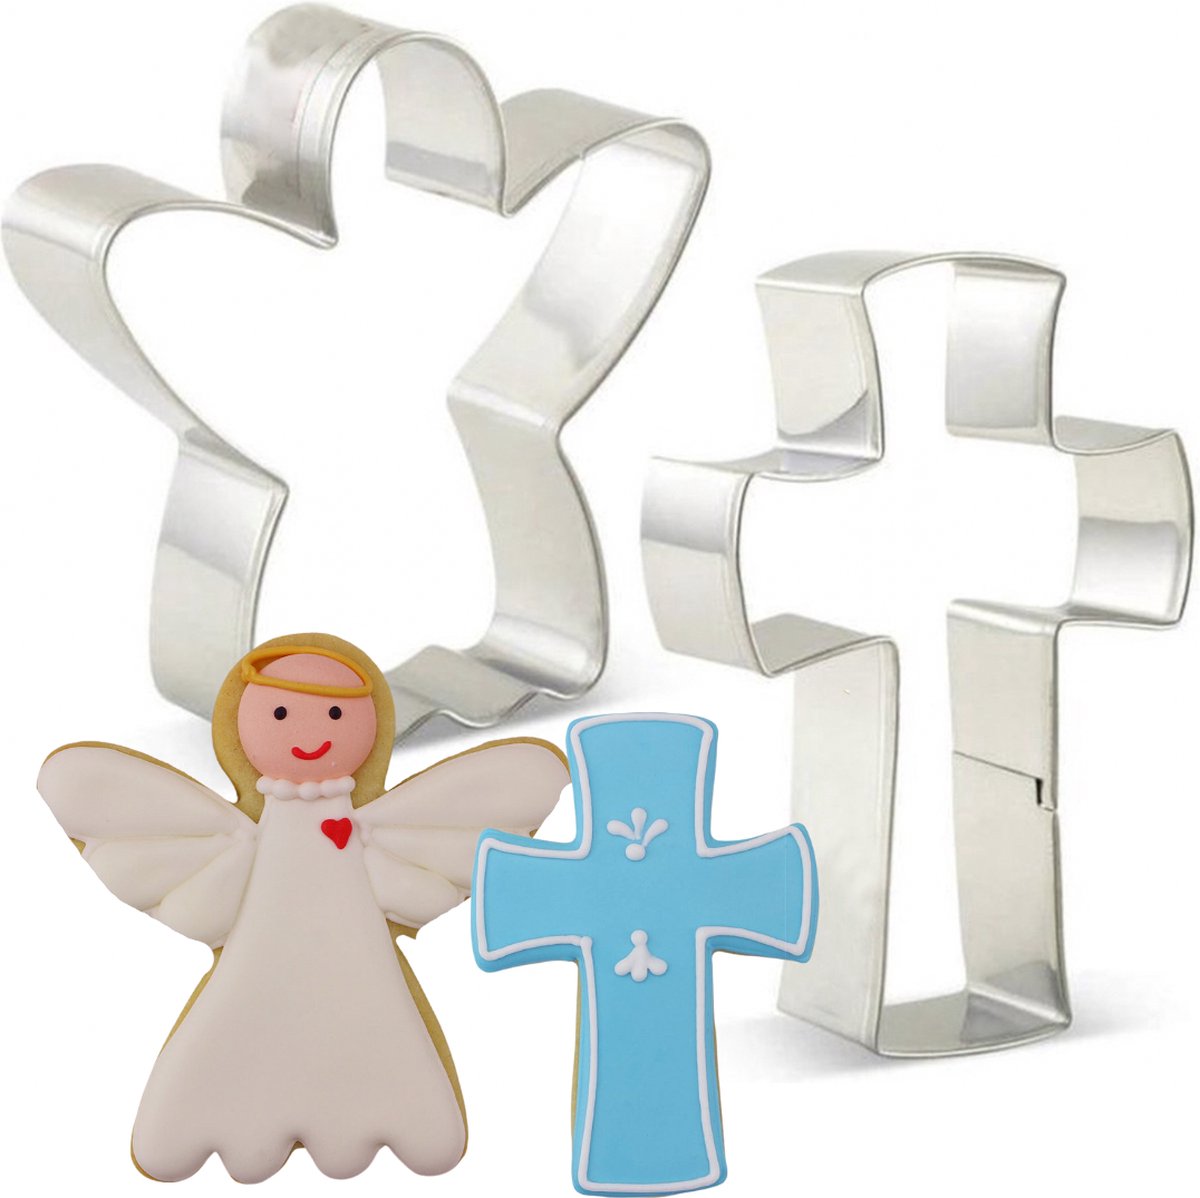 Engel en Kruis Uitsteekvormen | Kerst, Pasen, kerk, Christelijk, Koekjes bakken | RVS